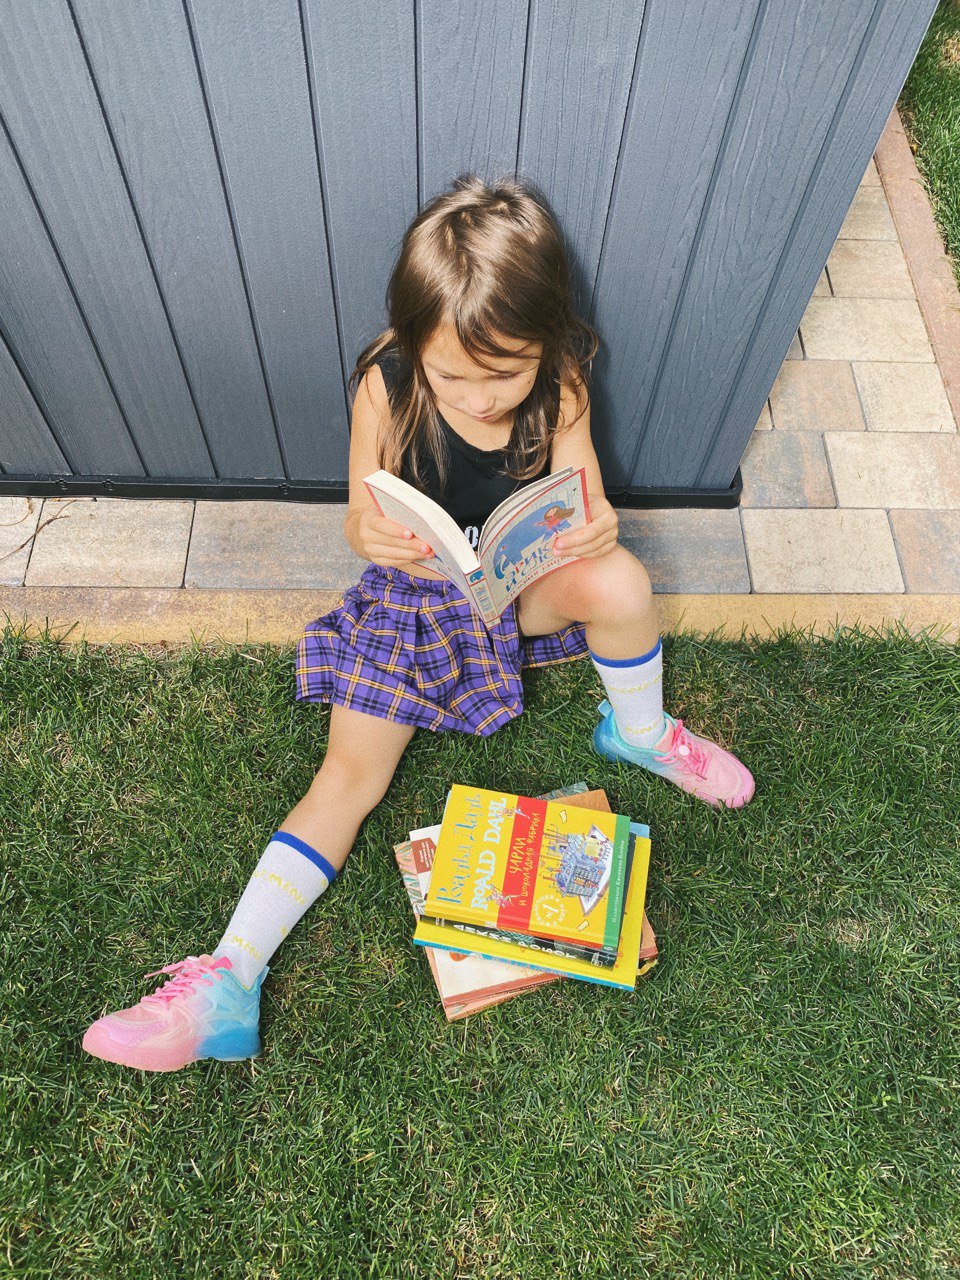 Девочка в юбке сидит на траве с книгами и читает